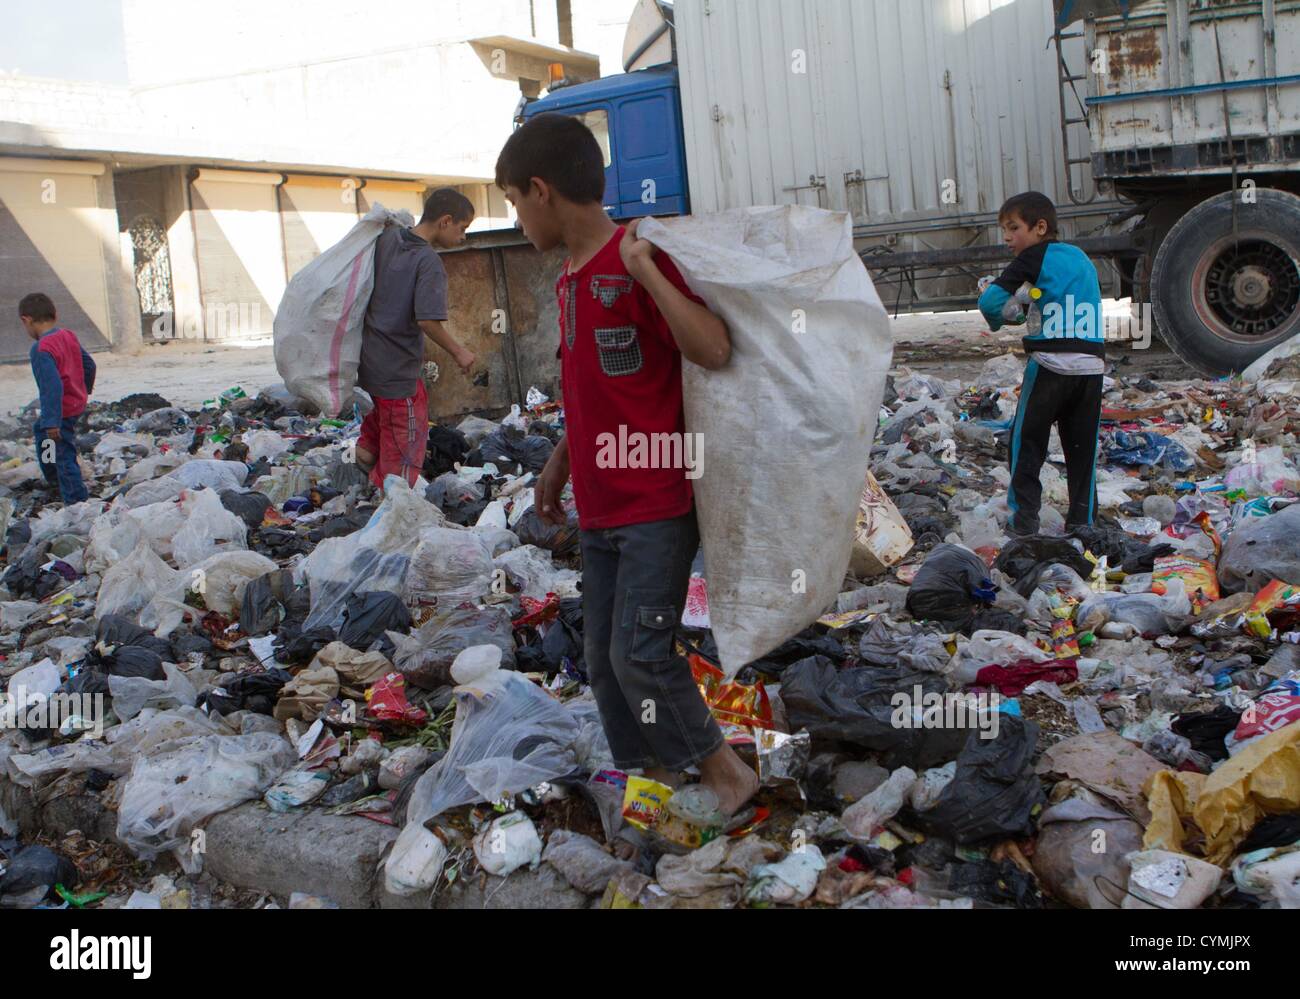 7. November 2012 - Aleppo, Syrien: Kinder aufräumen durch Papierkorb Shikh gesagt. Stockfoto